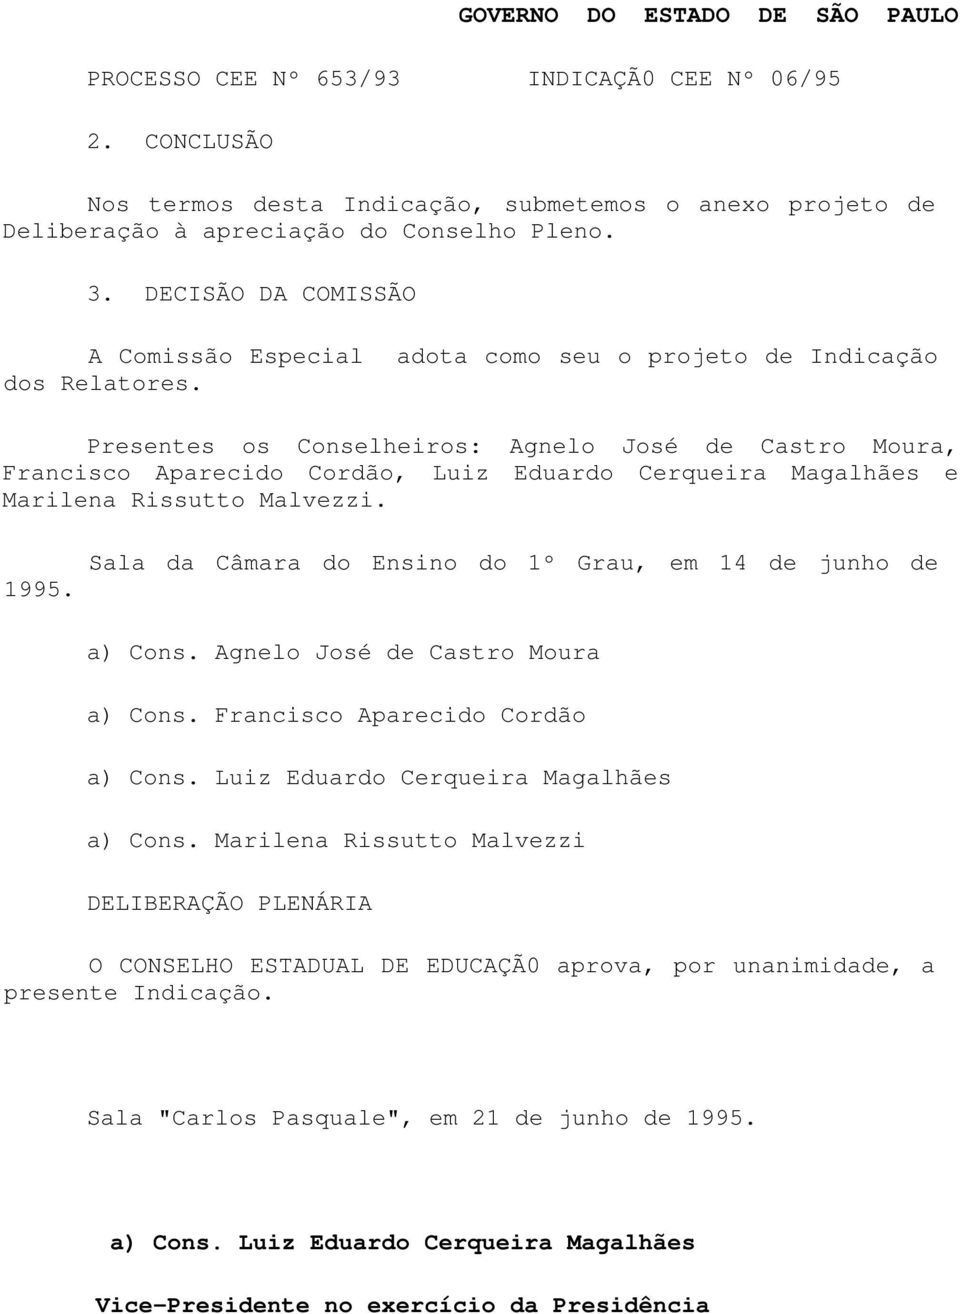 Presentes os Conselheiros: Agnelo José de Castro Moura, Francisco Aparecido Cordão, Luiz Eduardo Cerqueira Magalhães e Marilena Rissutto Malvezzi. 1995.